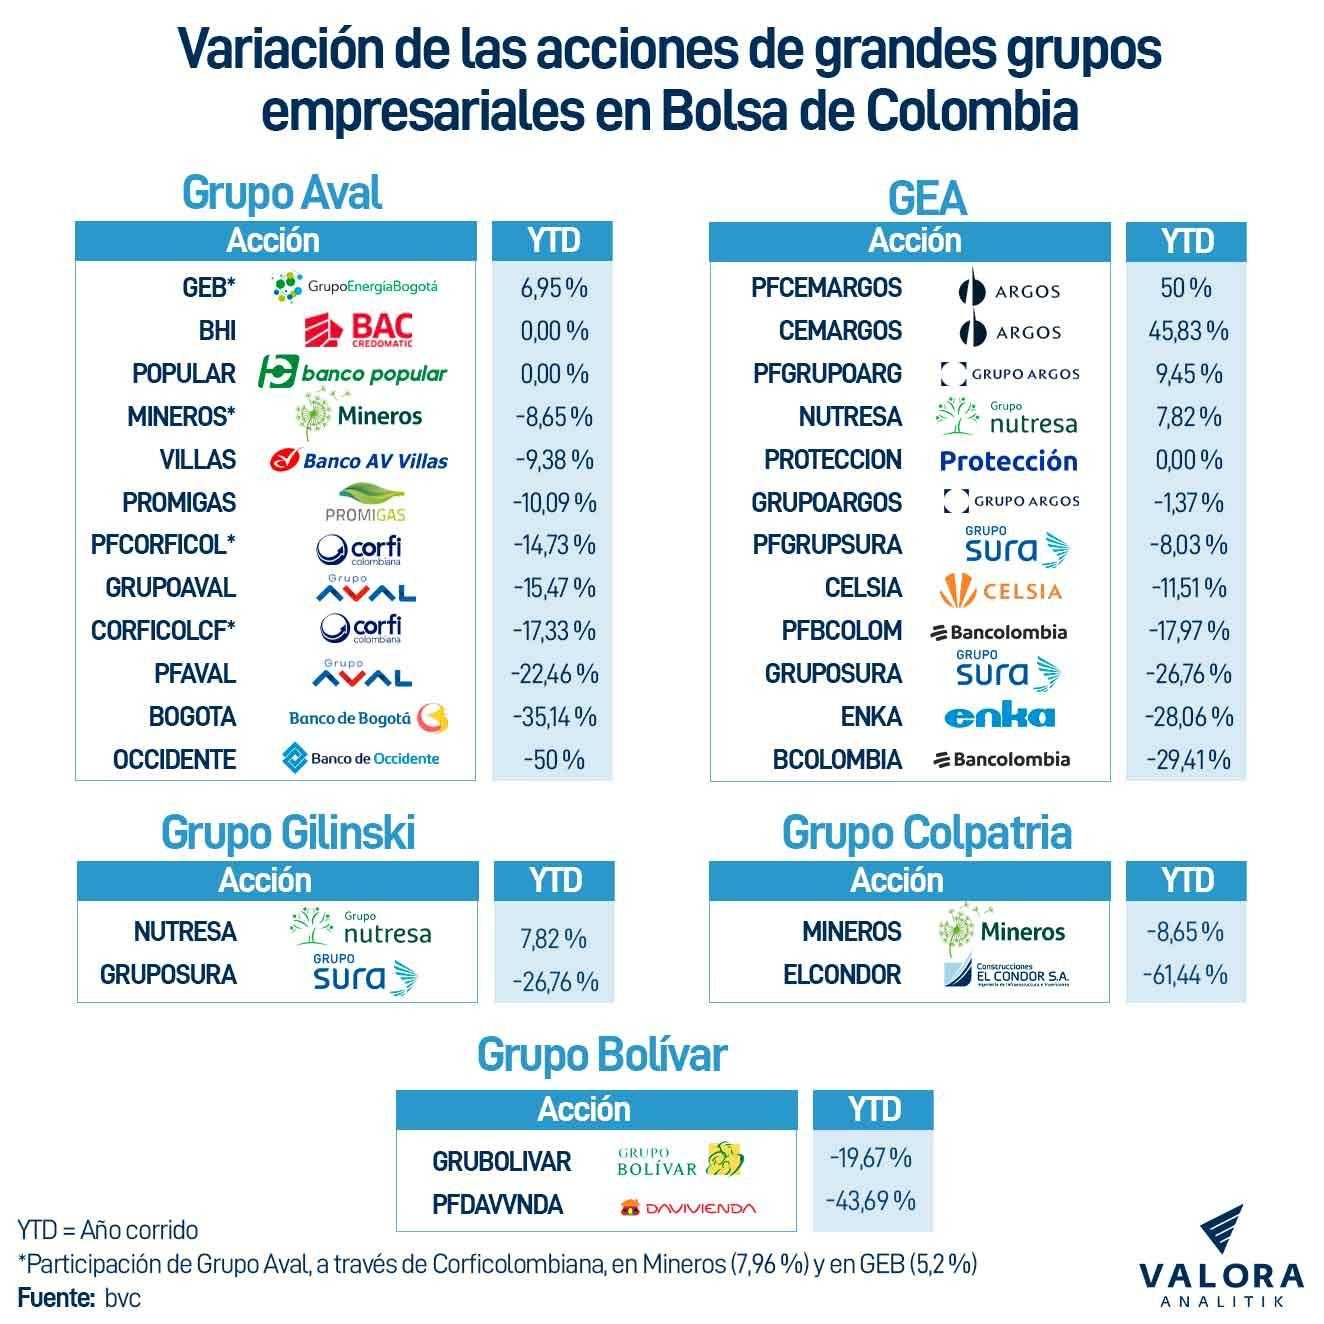 Variación acciones de grandes grupos empresariales en Bolsa de Colombia